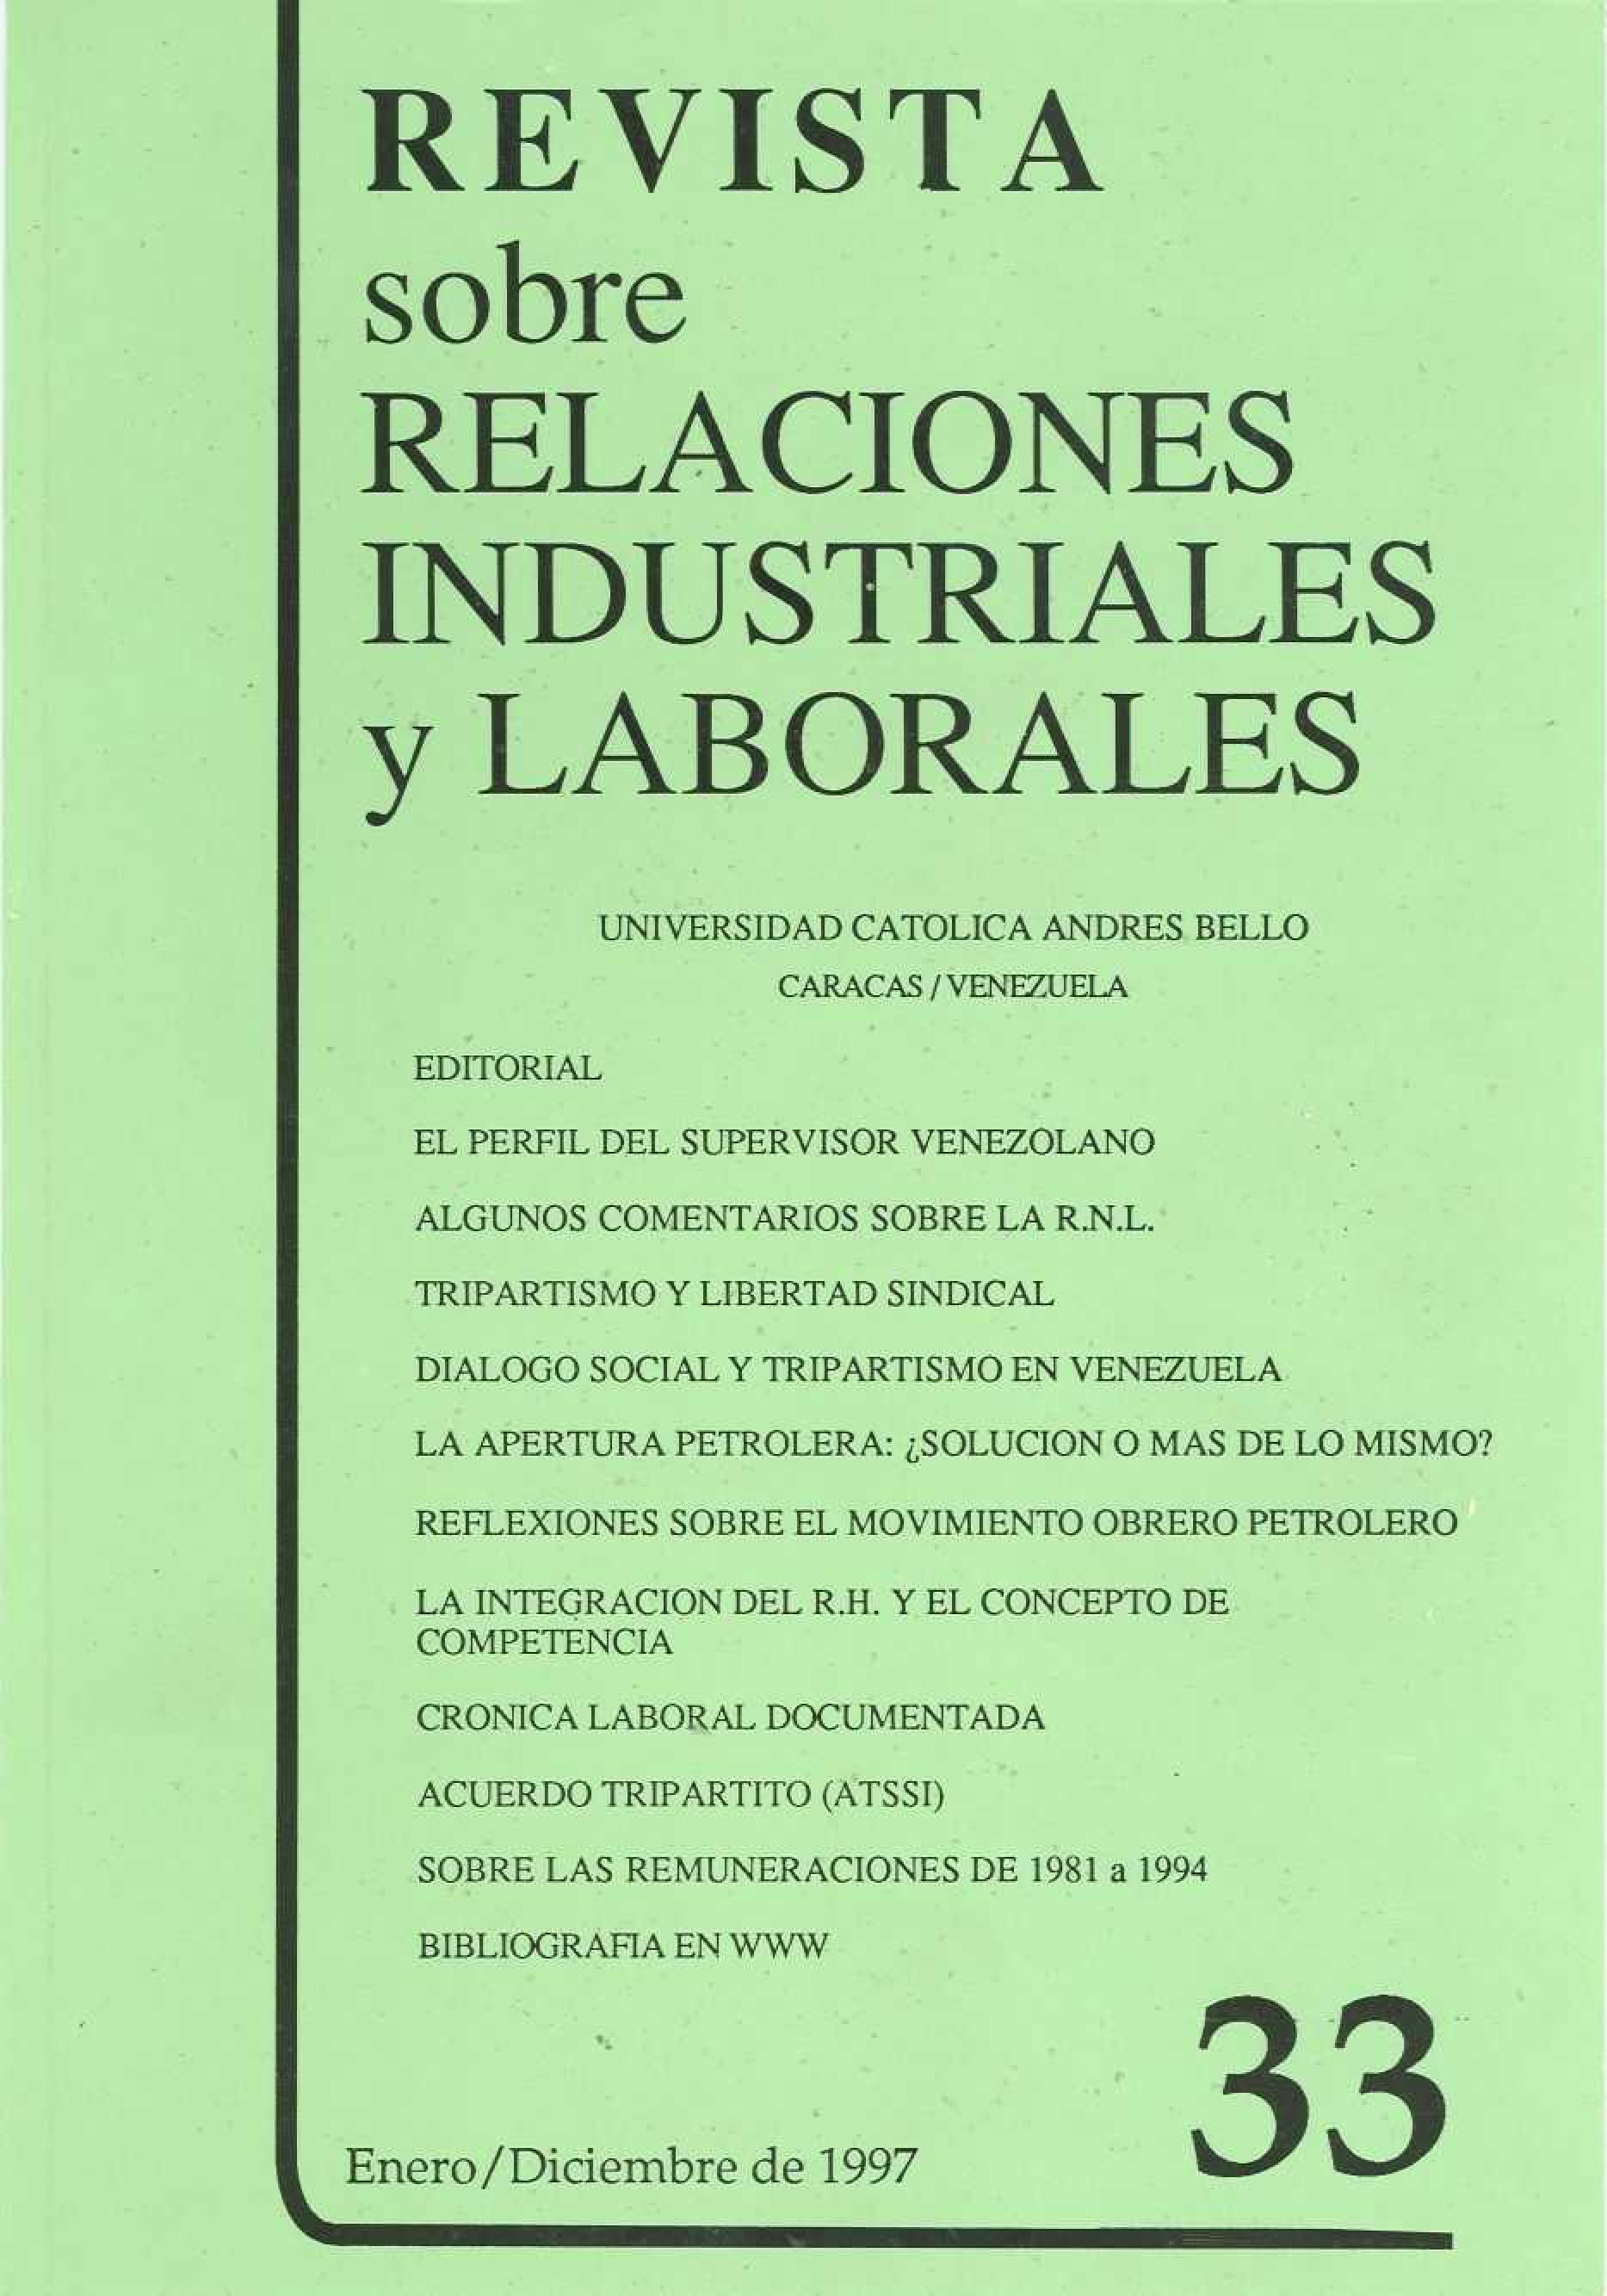 					Ver Núm. 33 (1997): Revista sobre Relaciones Industriales y Laborales
				